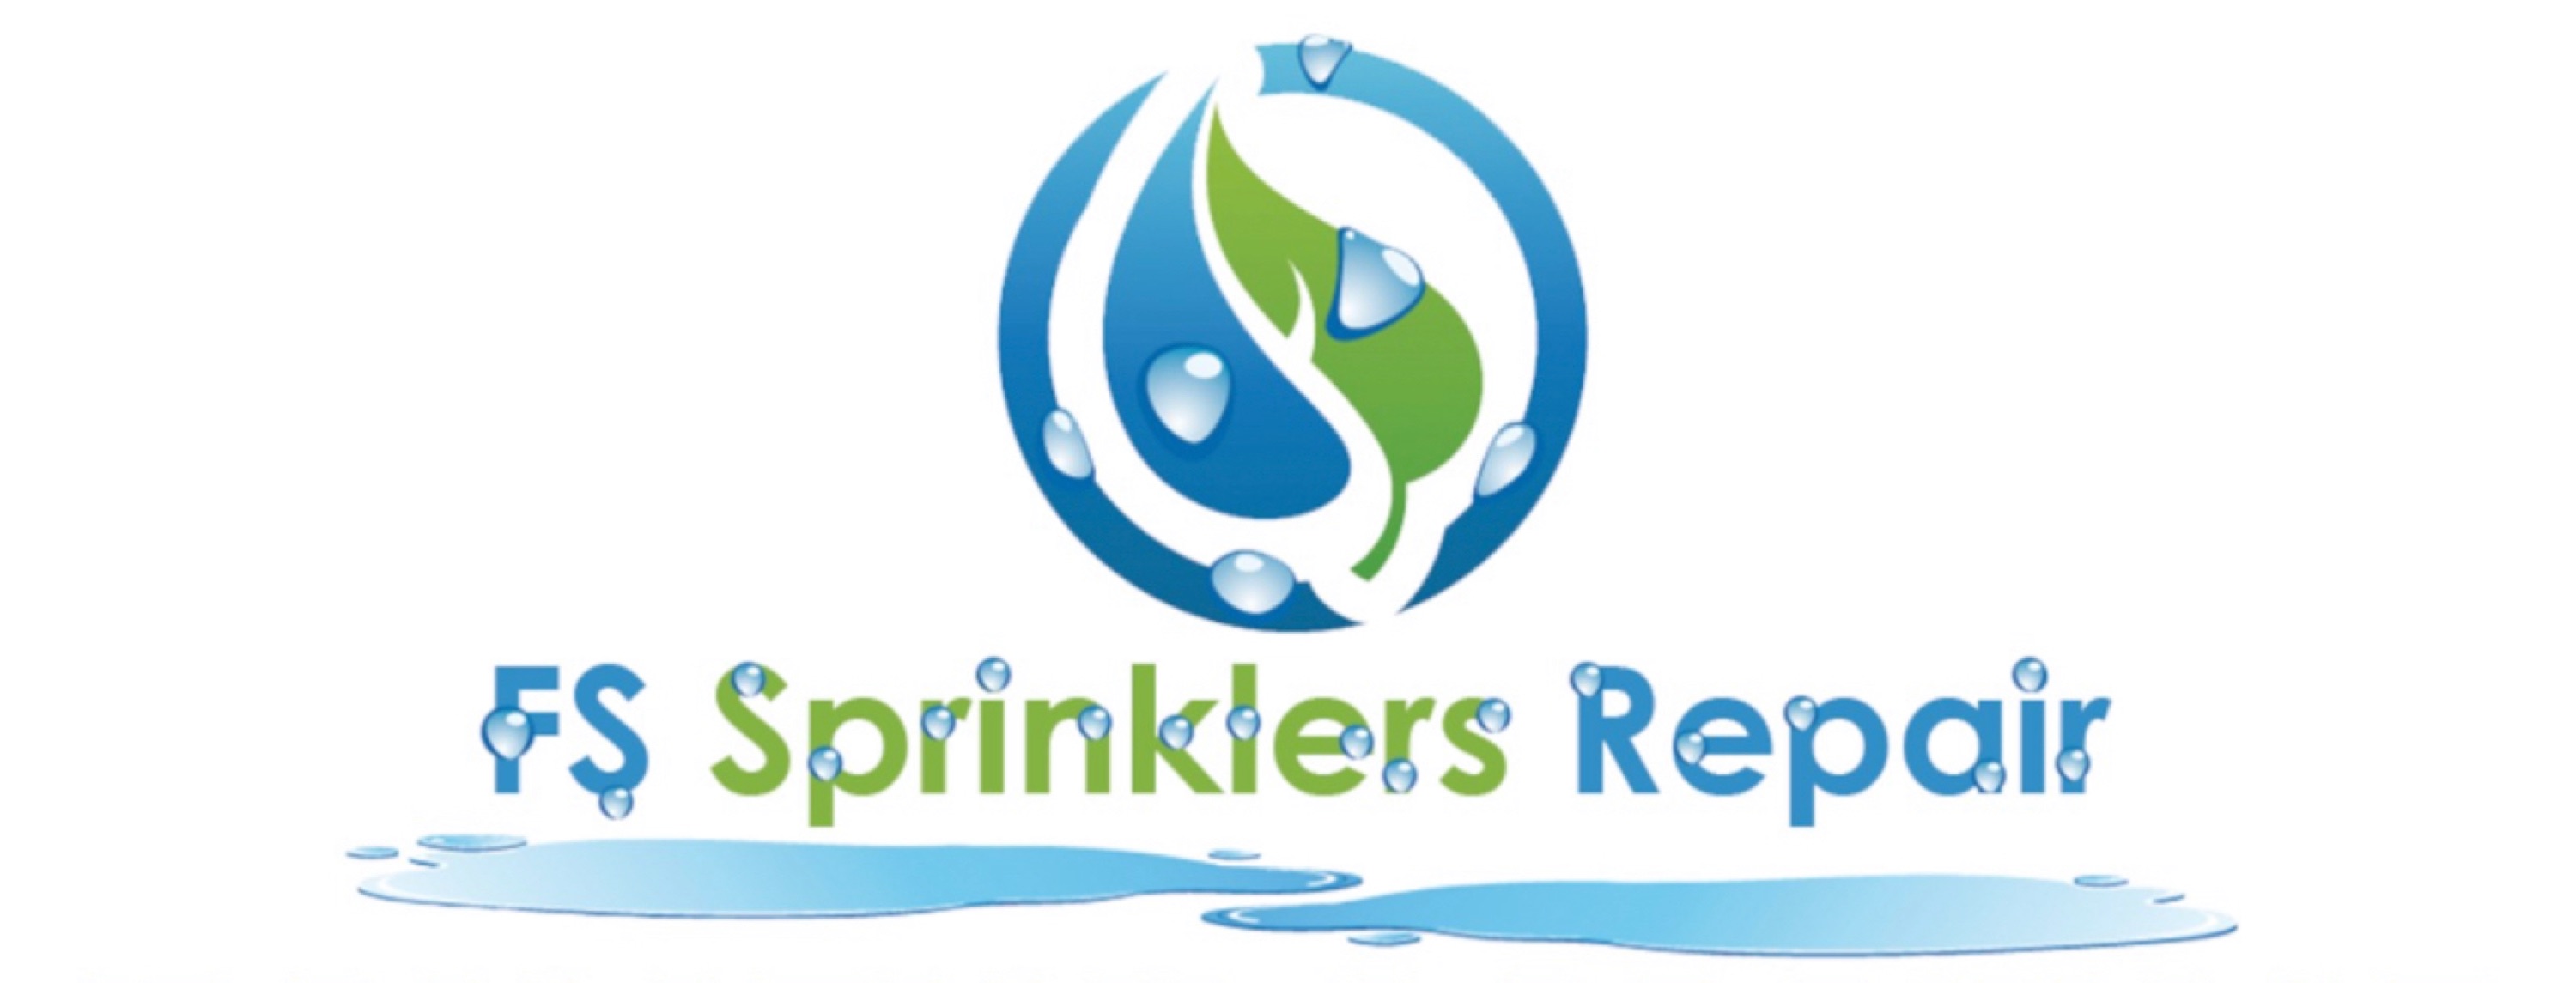 FS Sprinklers Repair Logo